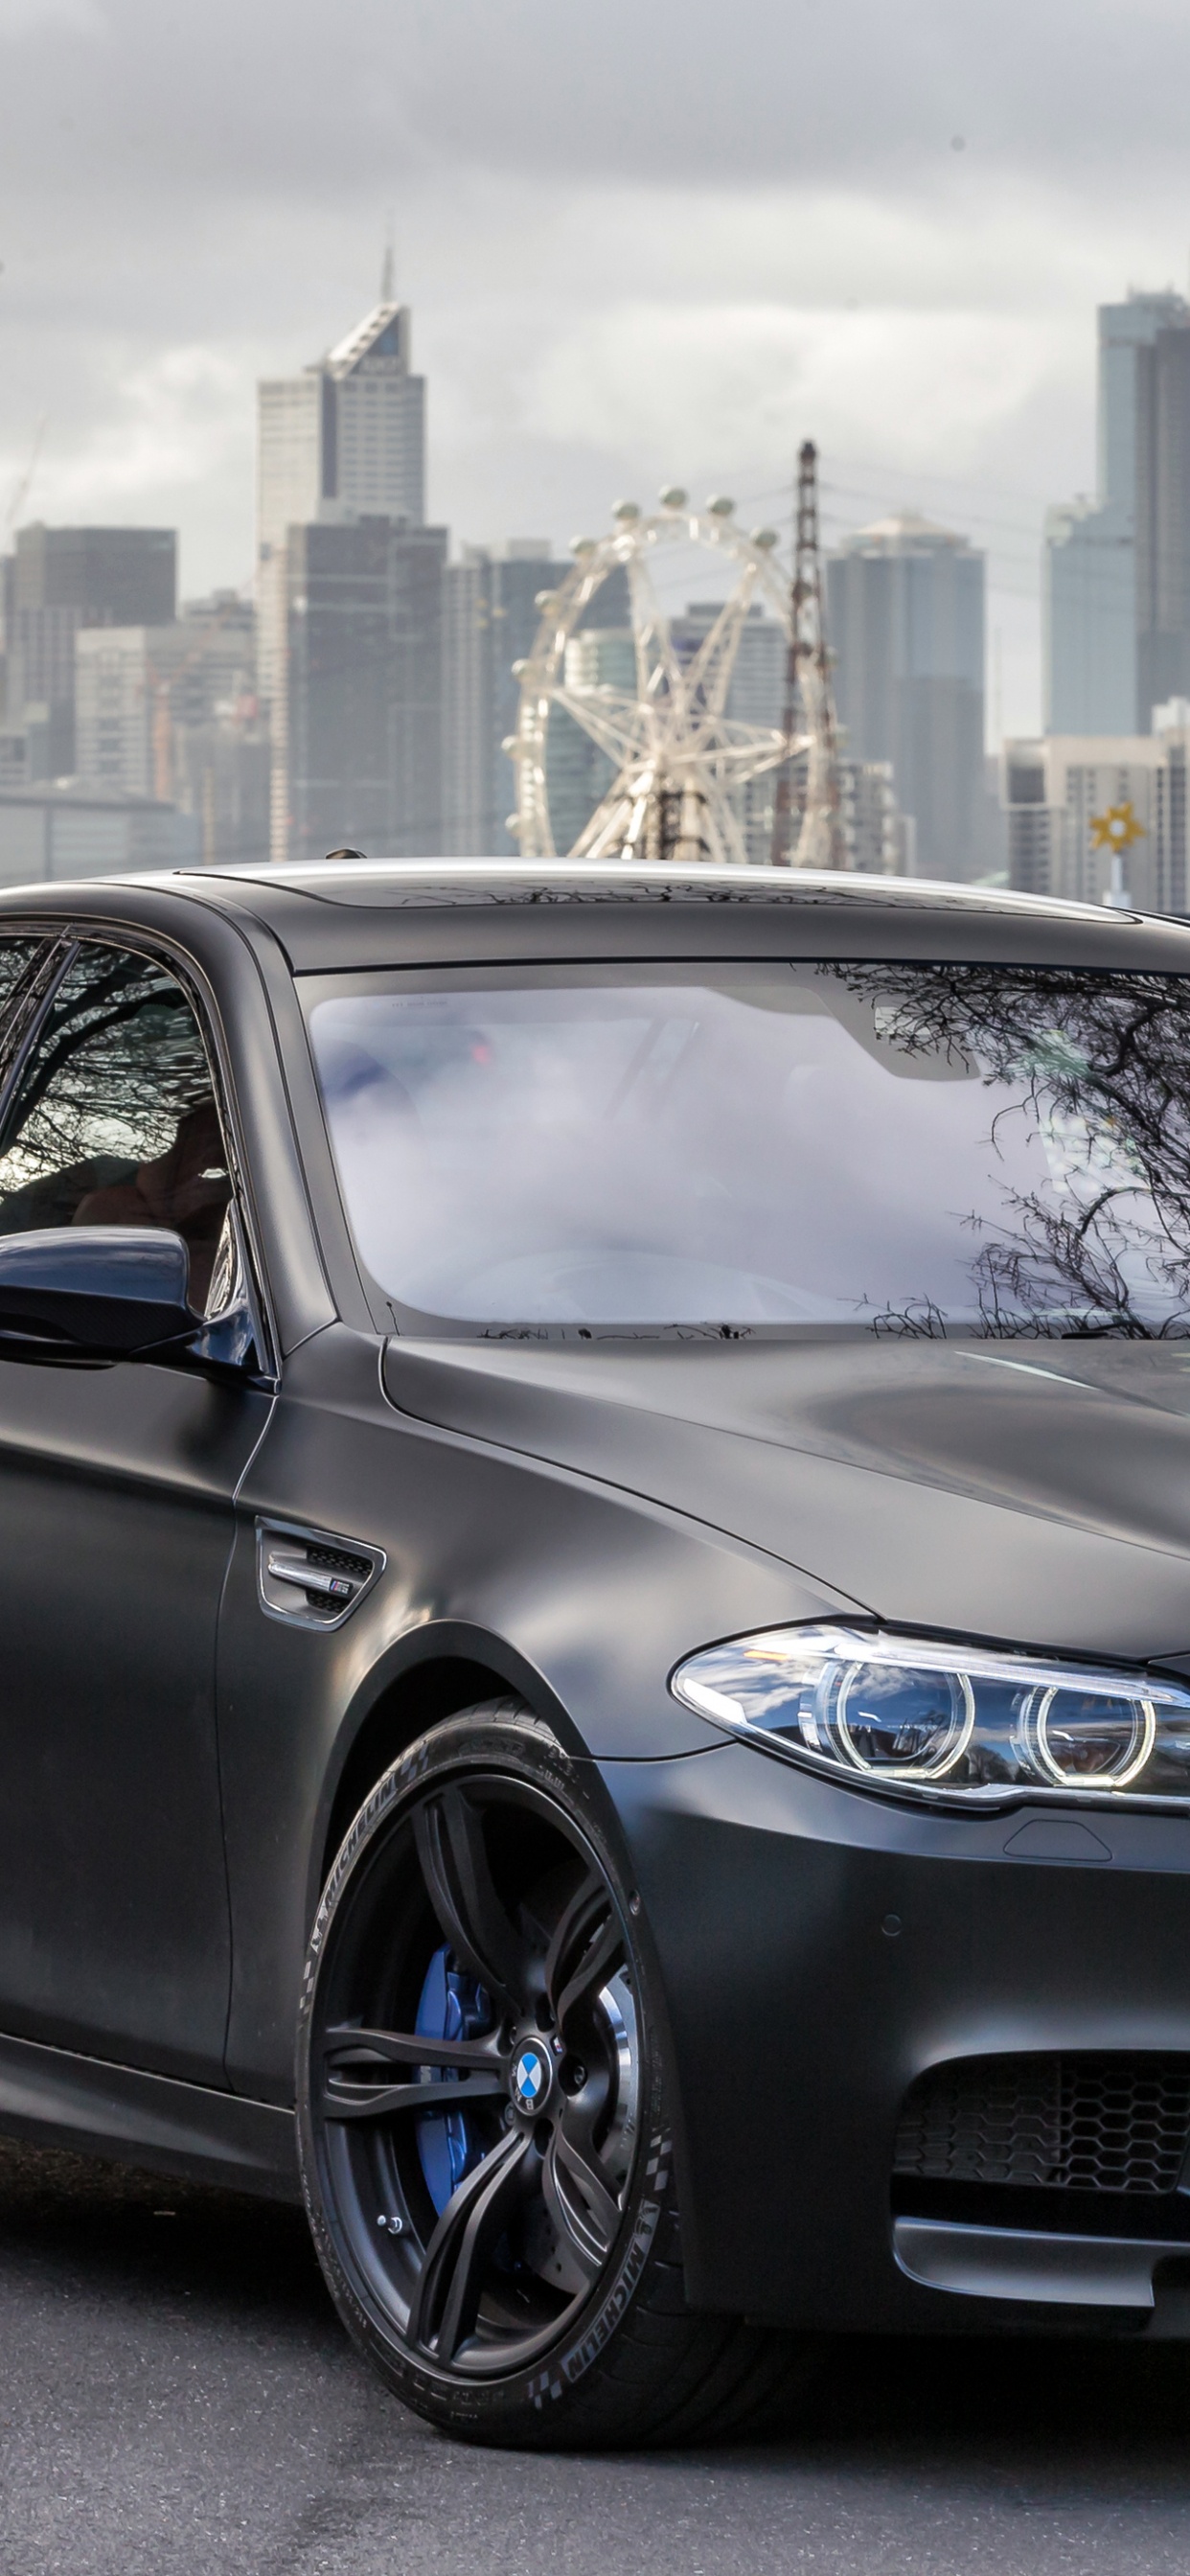 2018年BMW M5, 宝马, 宝马5系, 执行汽车, 铝合金轮毂 壁纸 1242x2688 允许